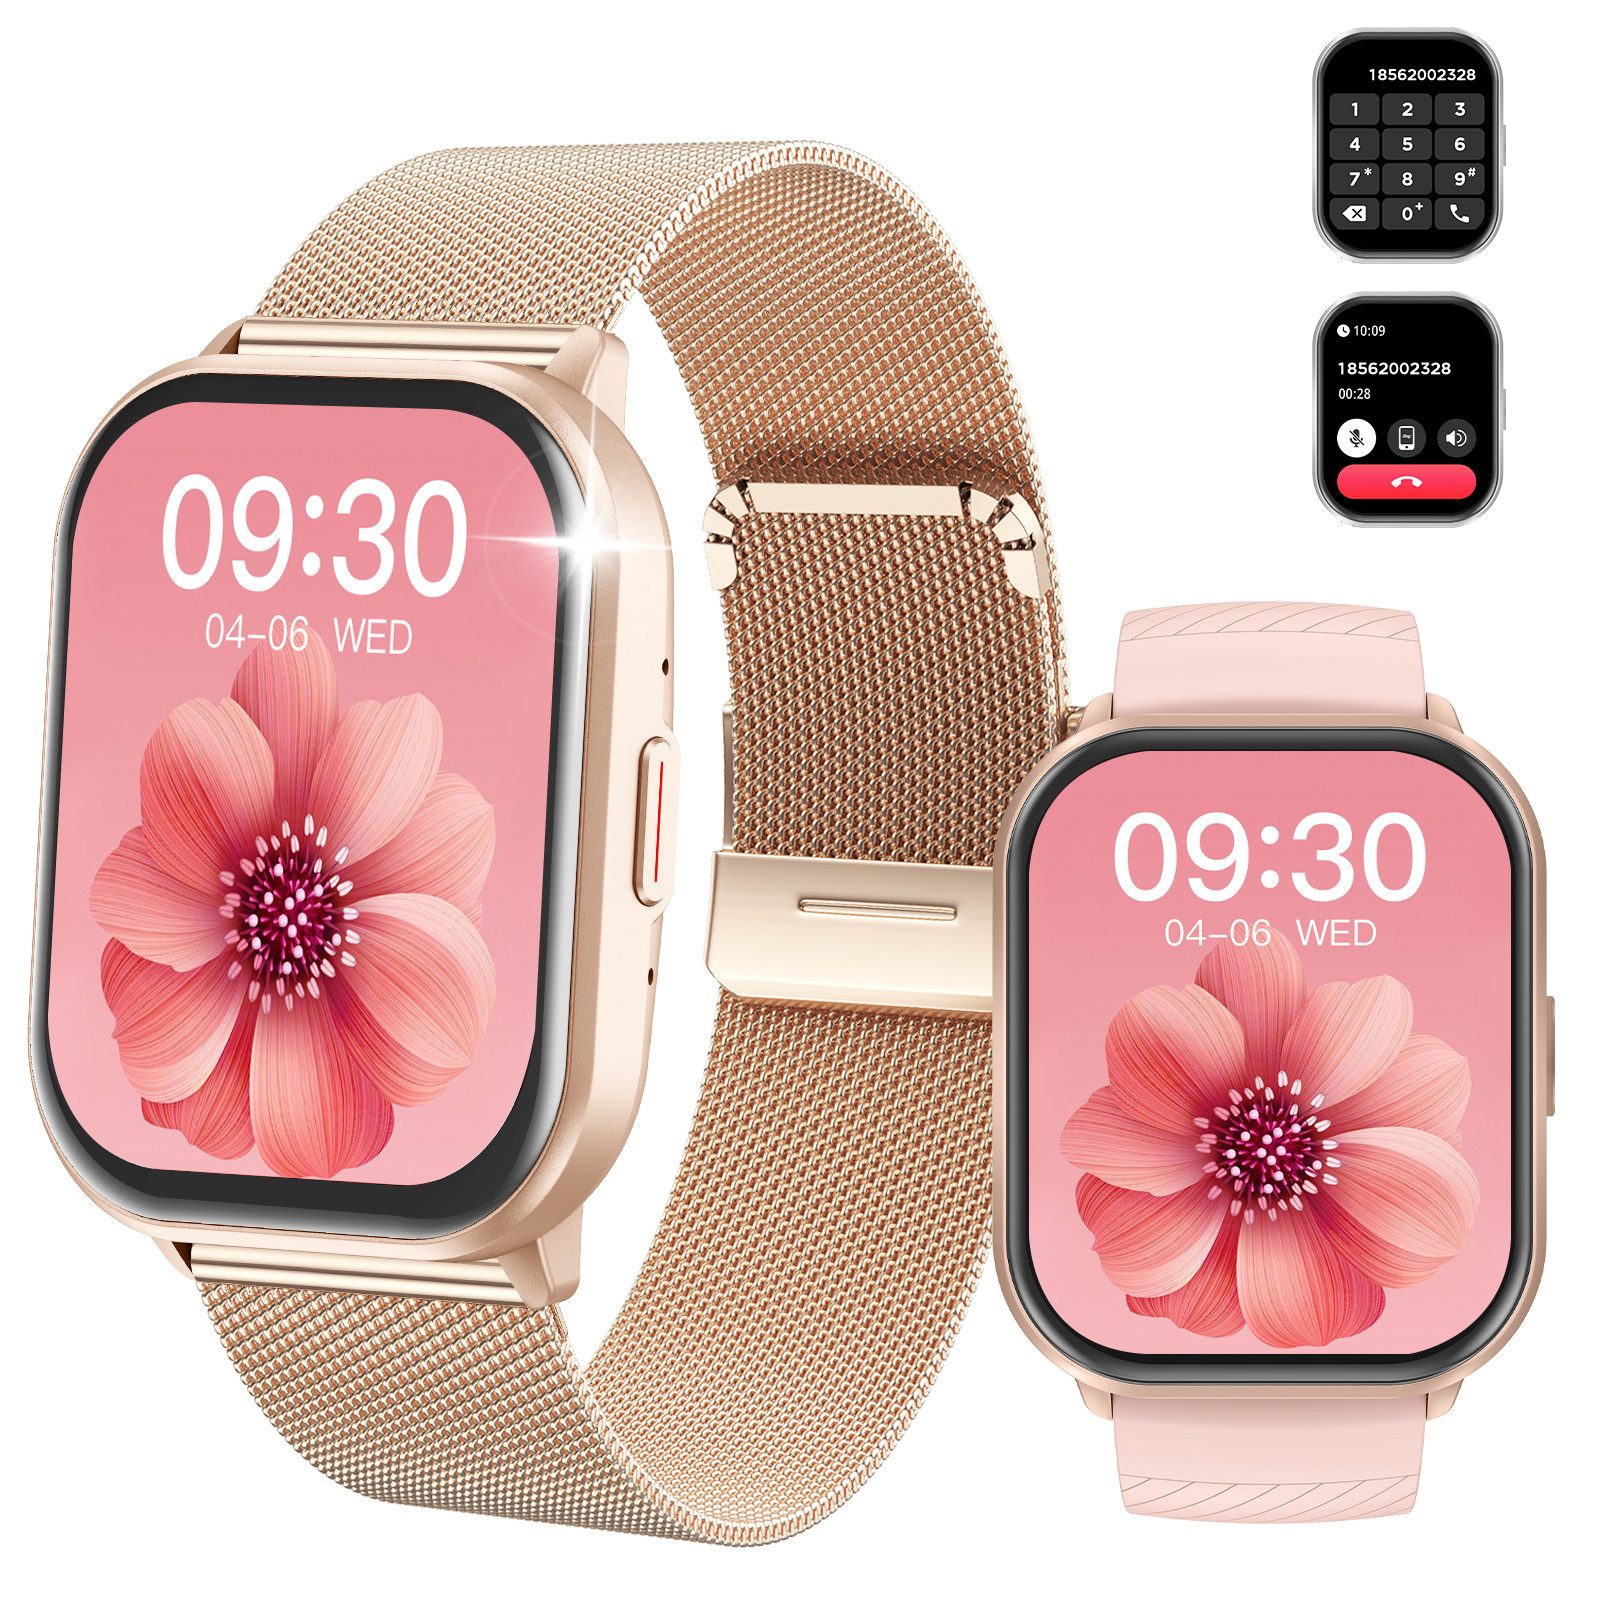 Yuede Smartwatch Damen Herren, Neueste Fitness Uhr mit Anruffunktion Smartwatch, Fitness Tracker Armbanduhr mit Schrittzähler, Blutsauerstoff, Blutdruckmessung, Schlafüberwachung, AI Voice und SNS-Benachrichtigung etc., Bluetooth 5.3 Sportuhr, IP68 wasserdicht, unterstützt 120+ Sportmodi, verfügbar für Android 5.0+ / iOS 9.0+